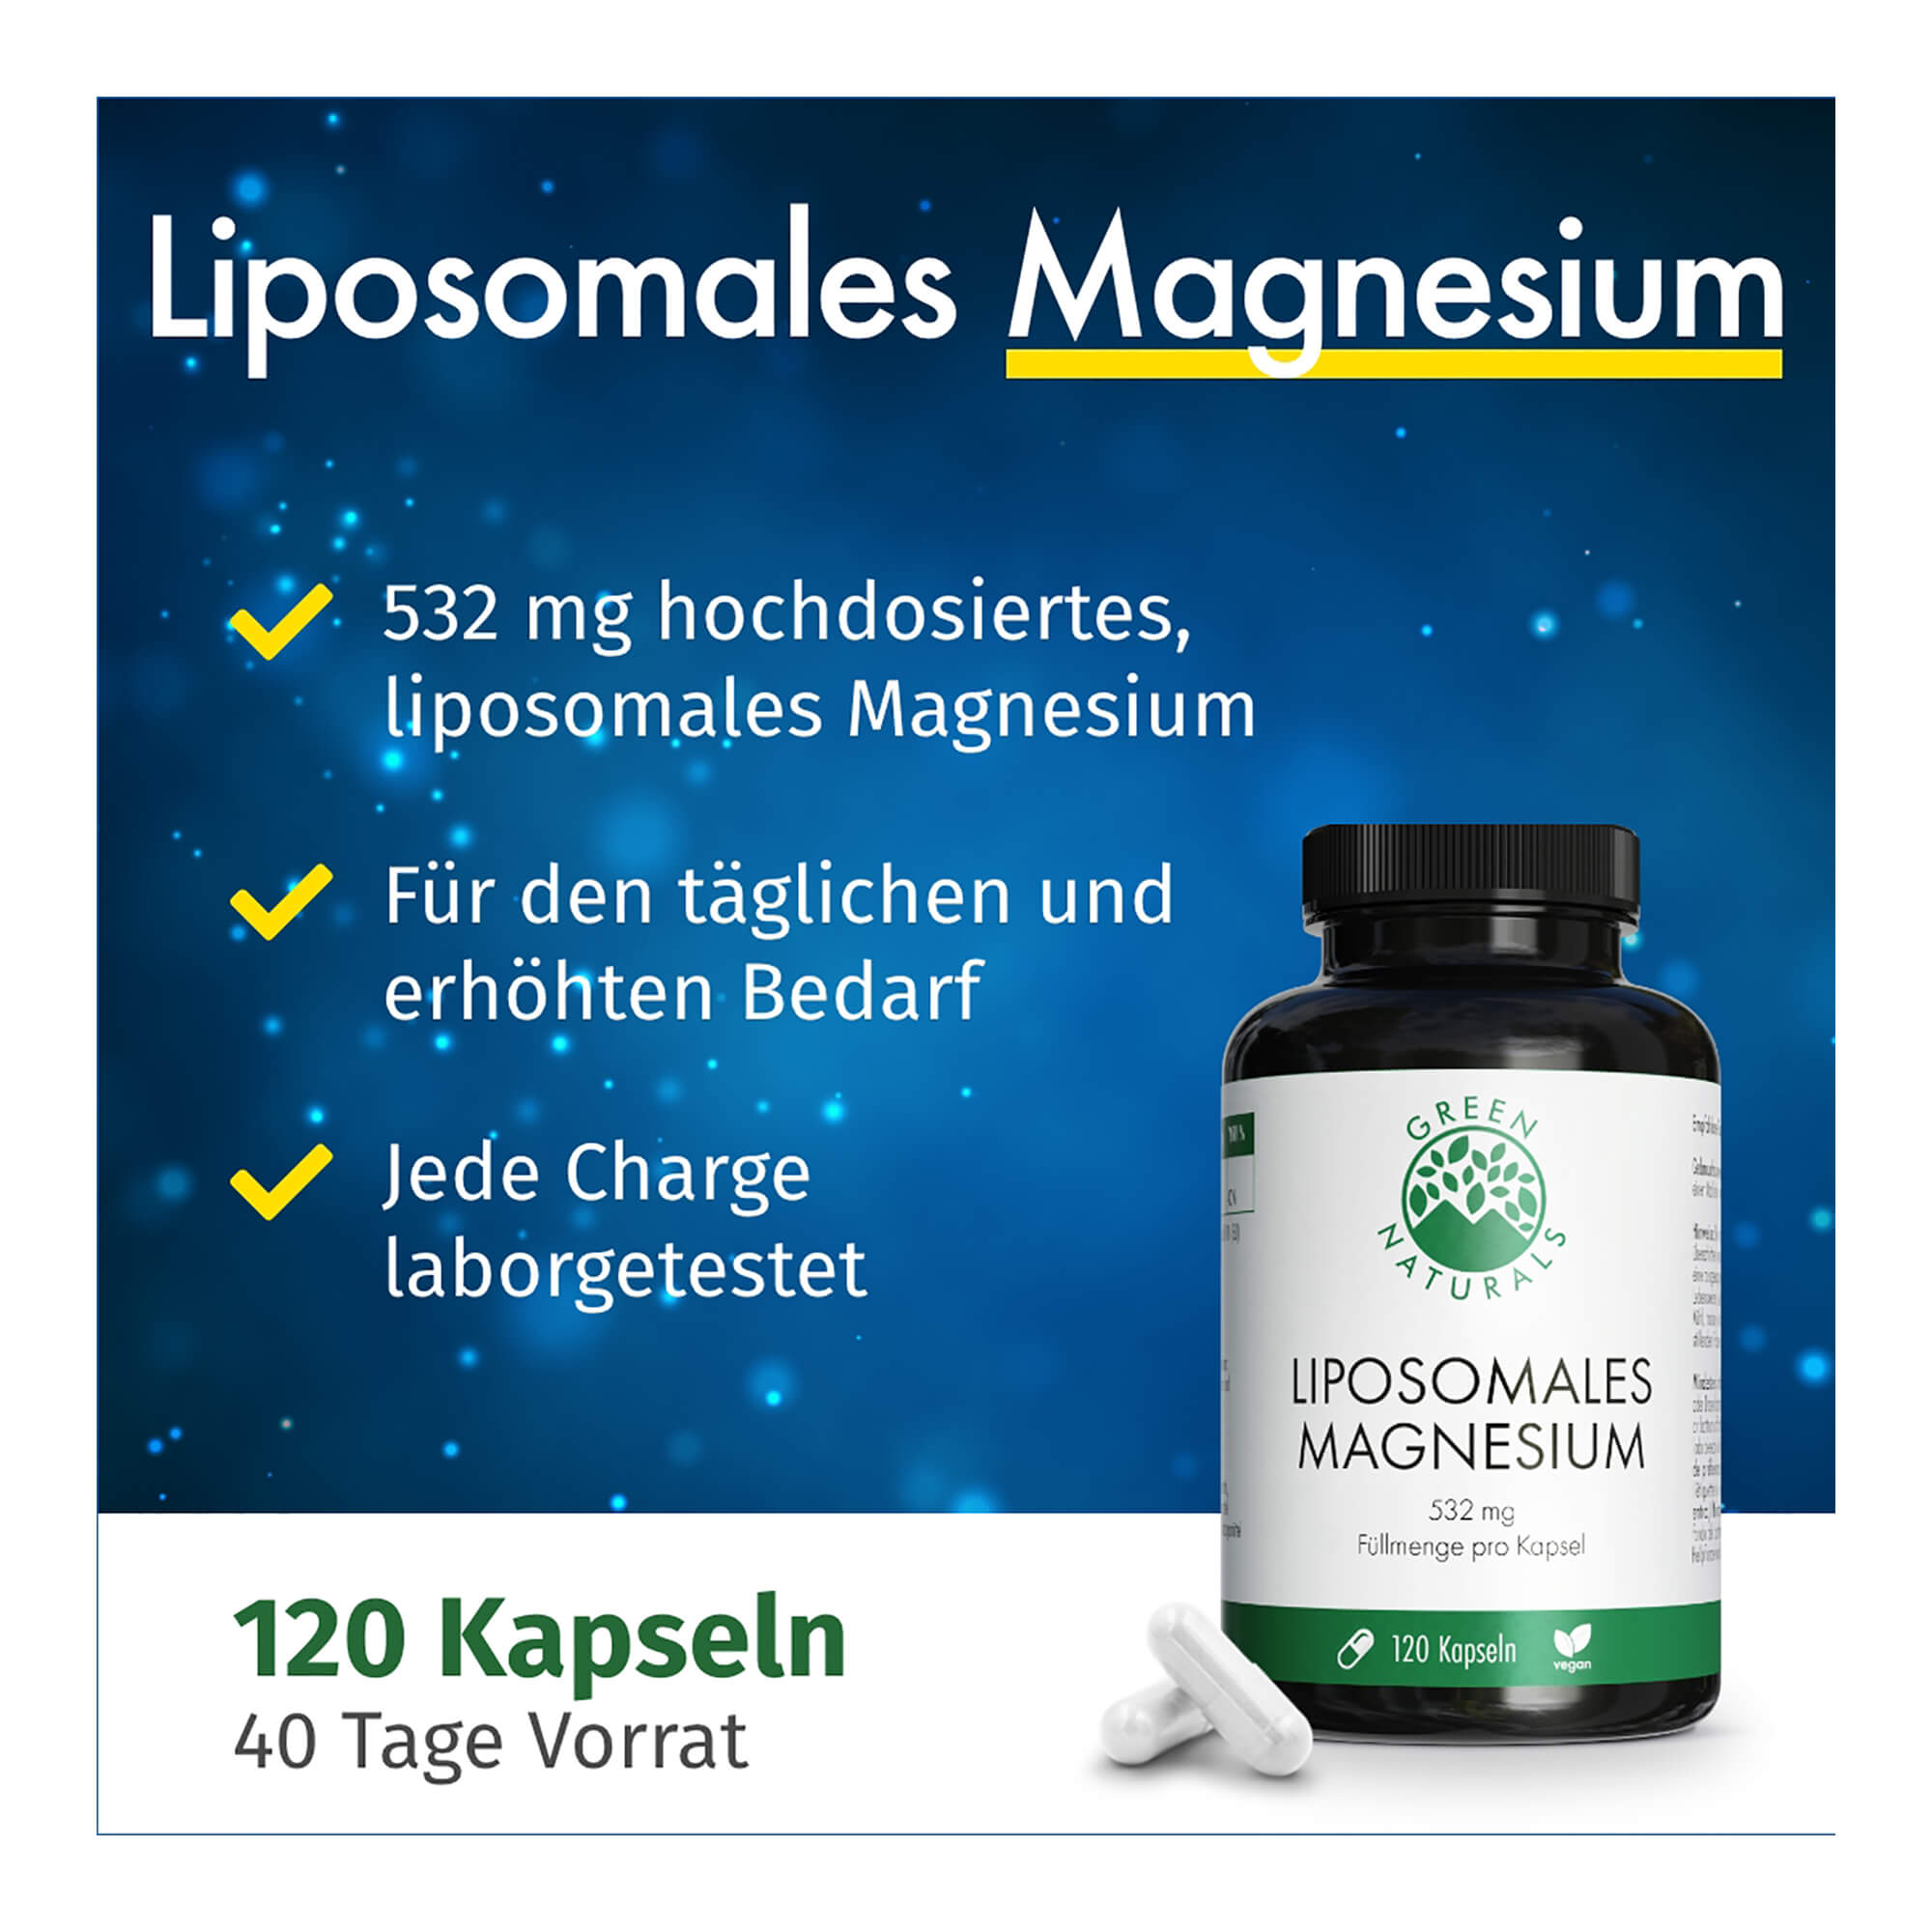 Eigenschaften von GREEN NATURALS Liposomales Magnesium